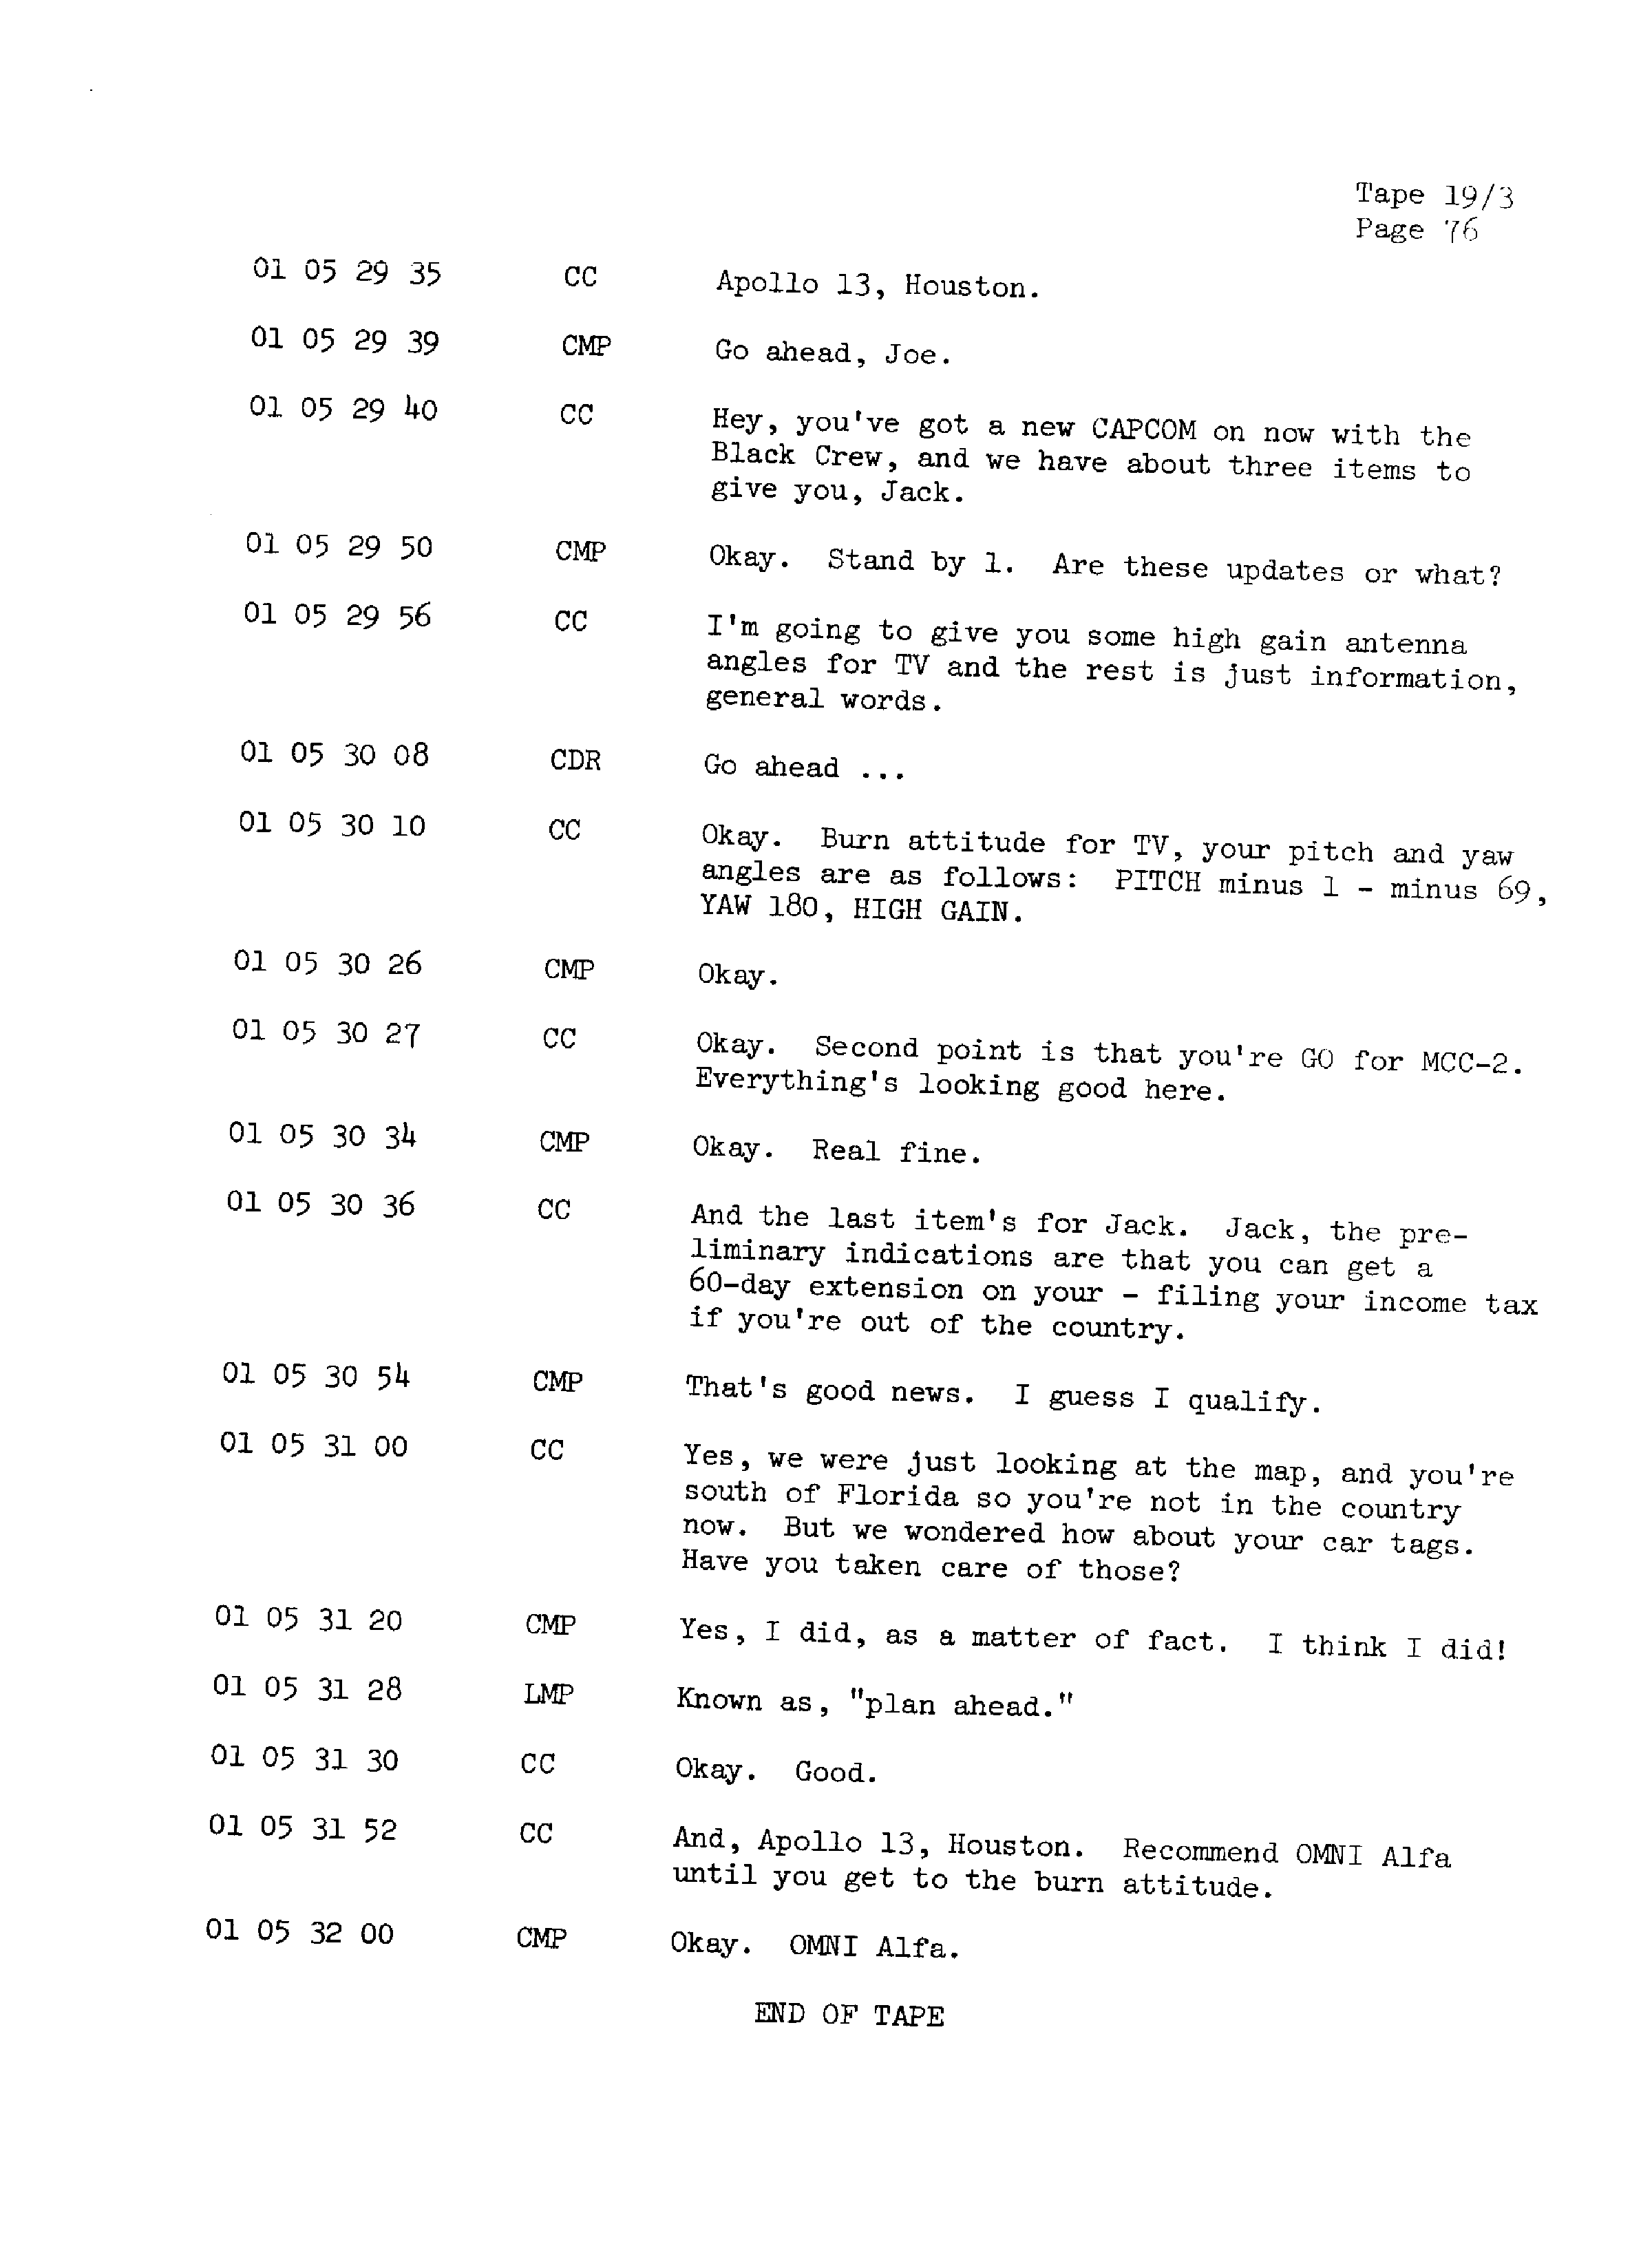 Page 83 of Apollo 13’s original transcript